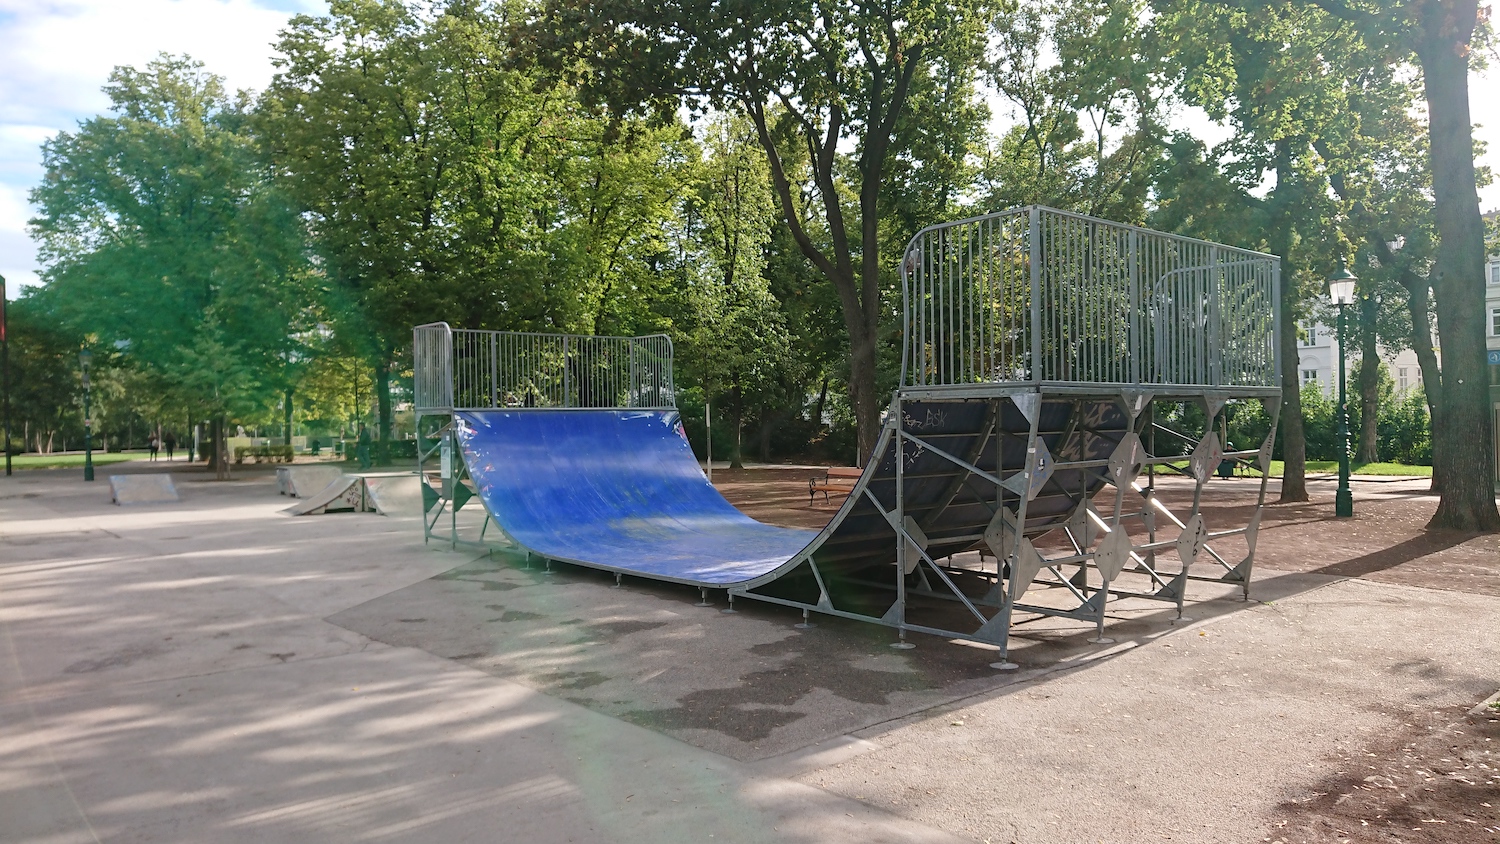 Stadtpark Skatepark